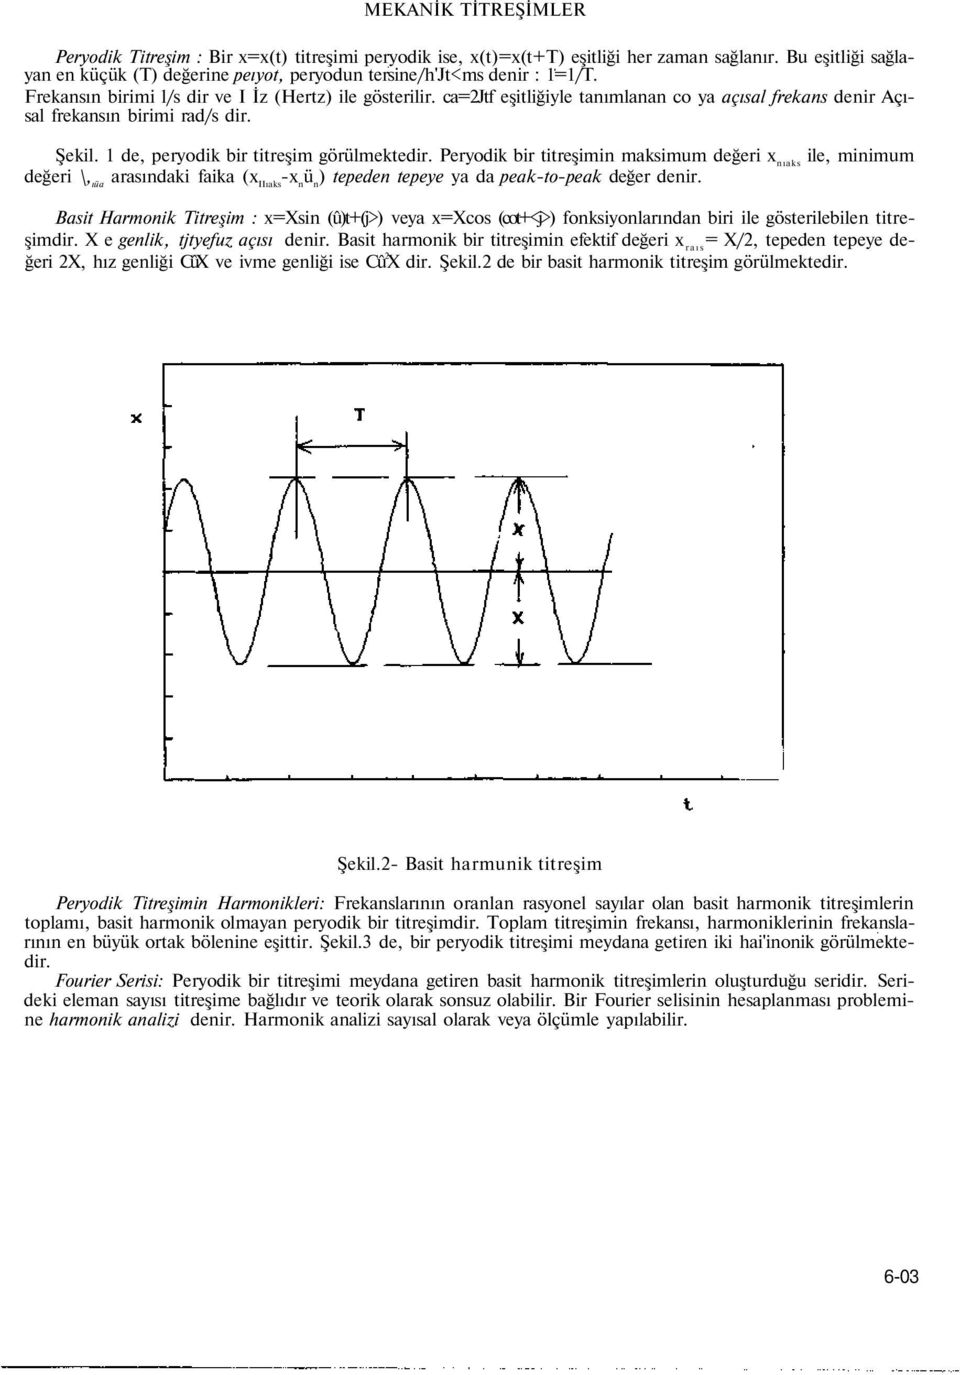 Peryodik bir titreşimin maksimum değeri x nıaks ile, minimum değeri, ıüa arasındaki faika (x IIıaks -x n ü n ) tepeden tepeye ya da peak-to-peak değer denir.